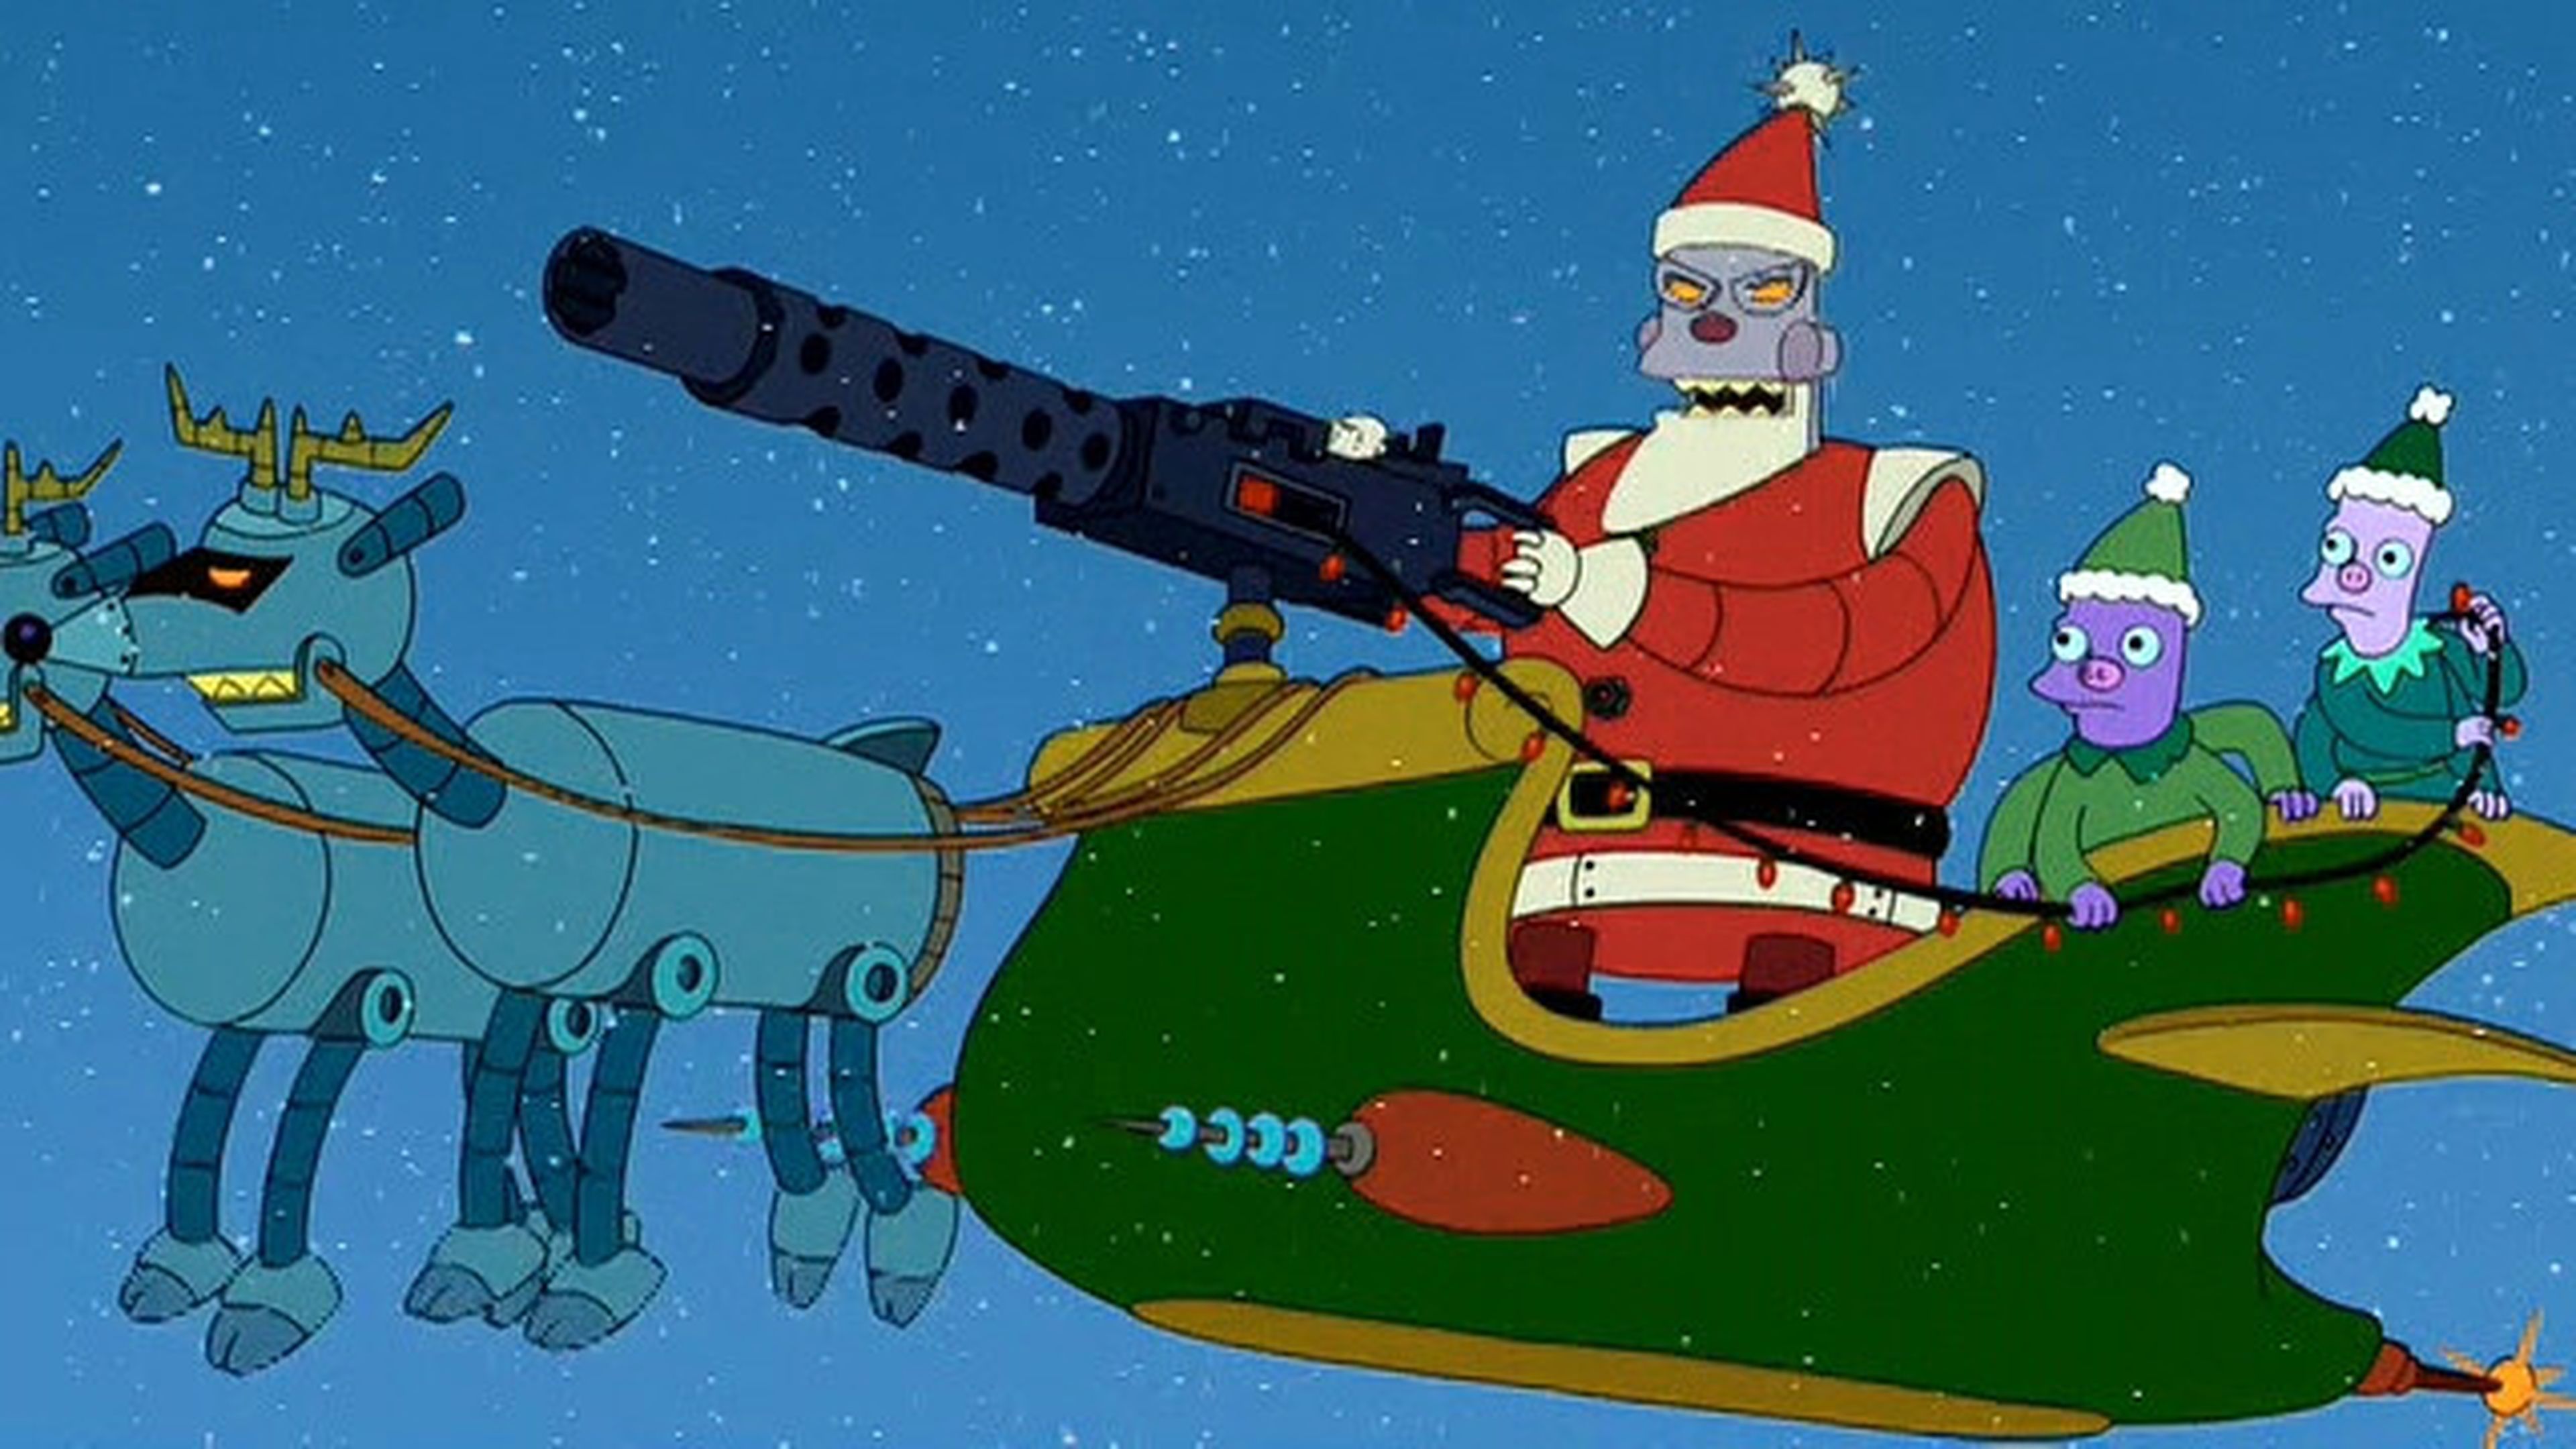 Futurama - Robot Santa Claus